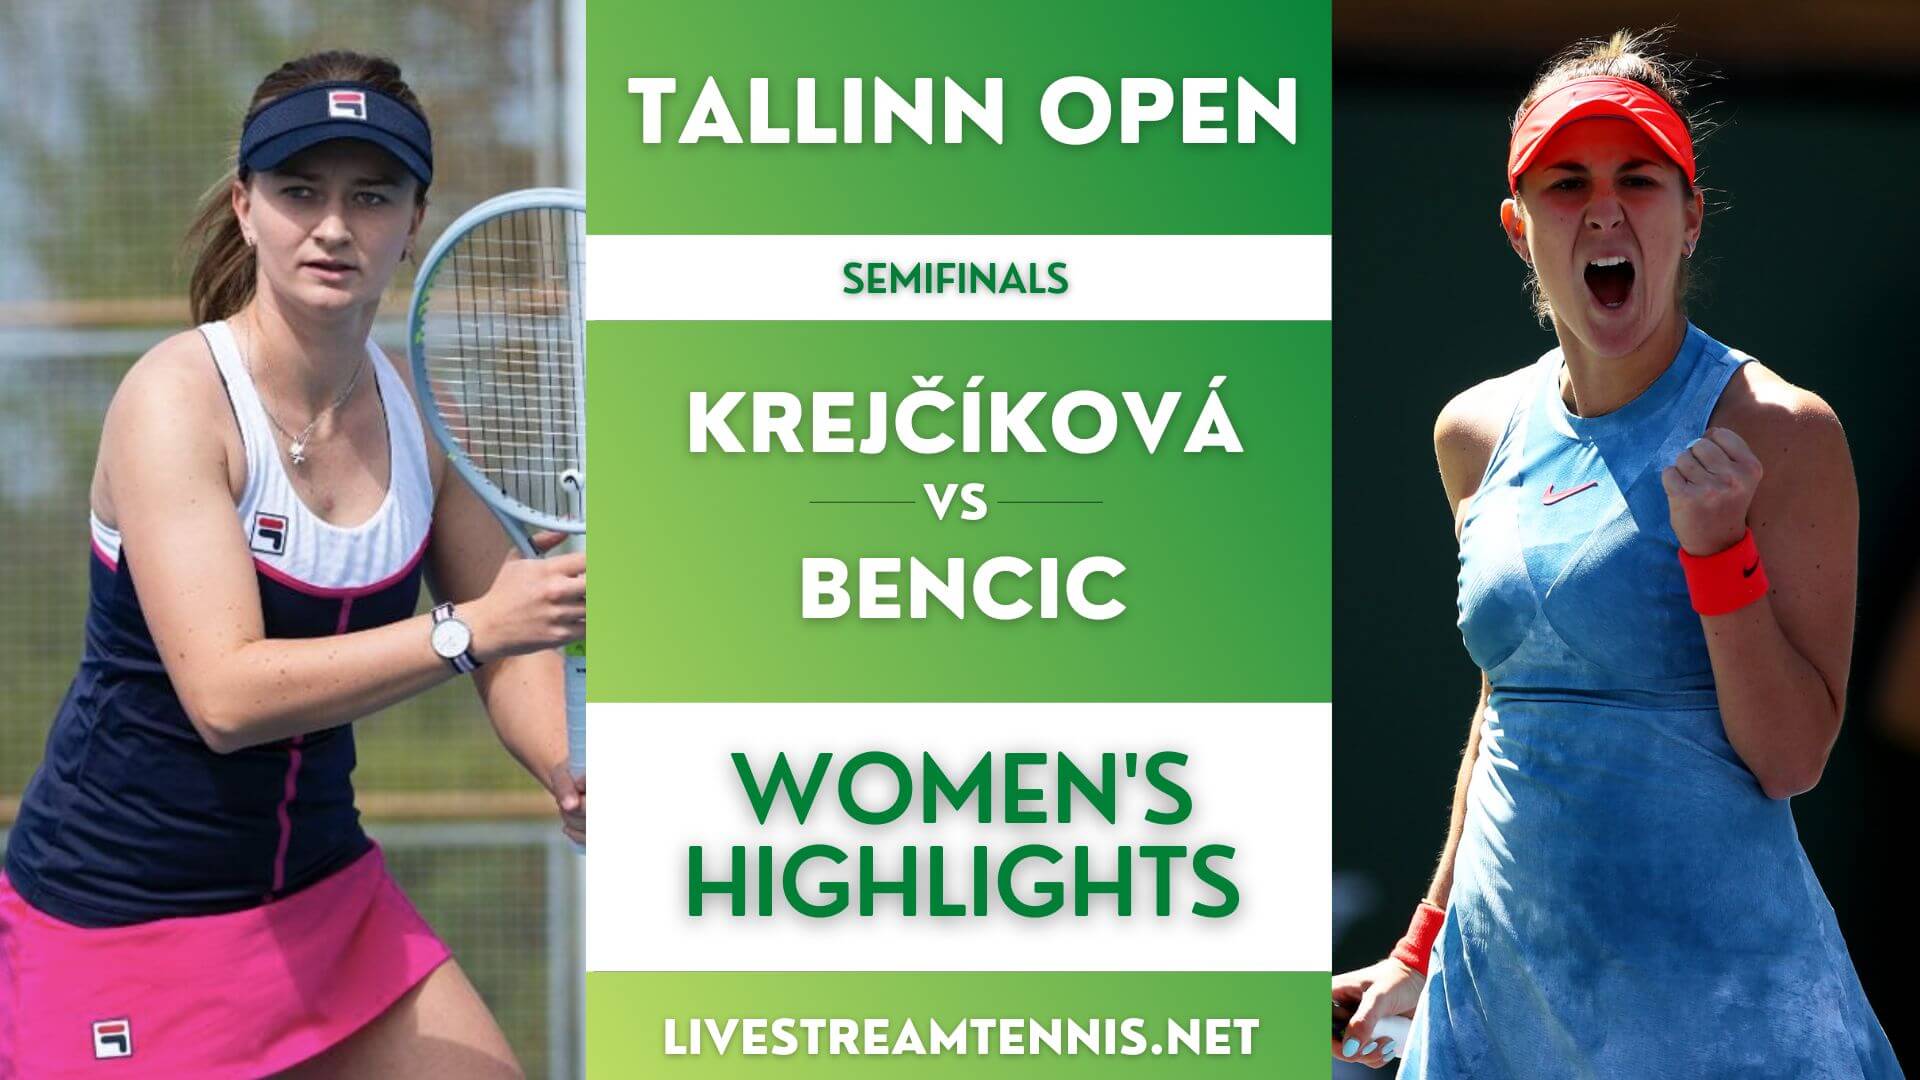 Tallinn Open Women Semifinal 2 Highlights 2022